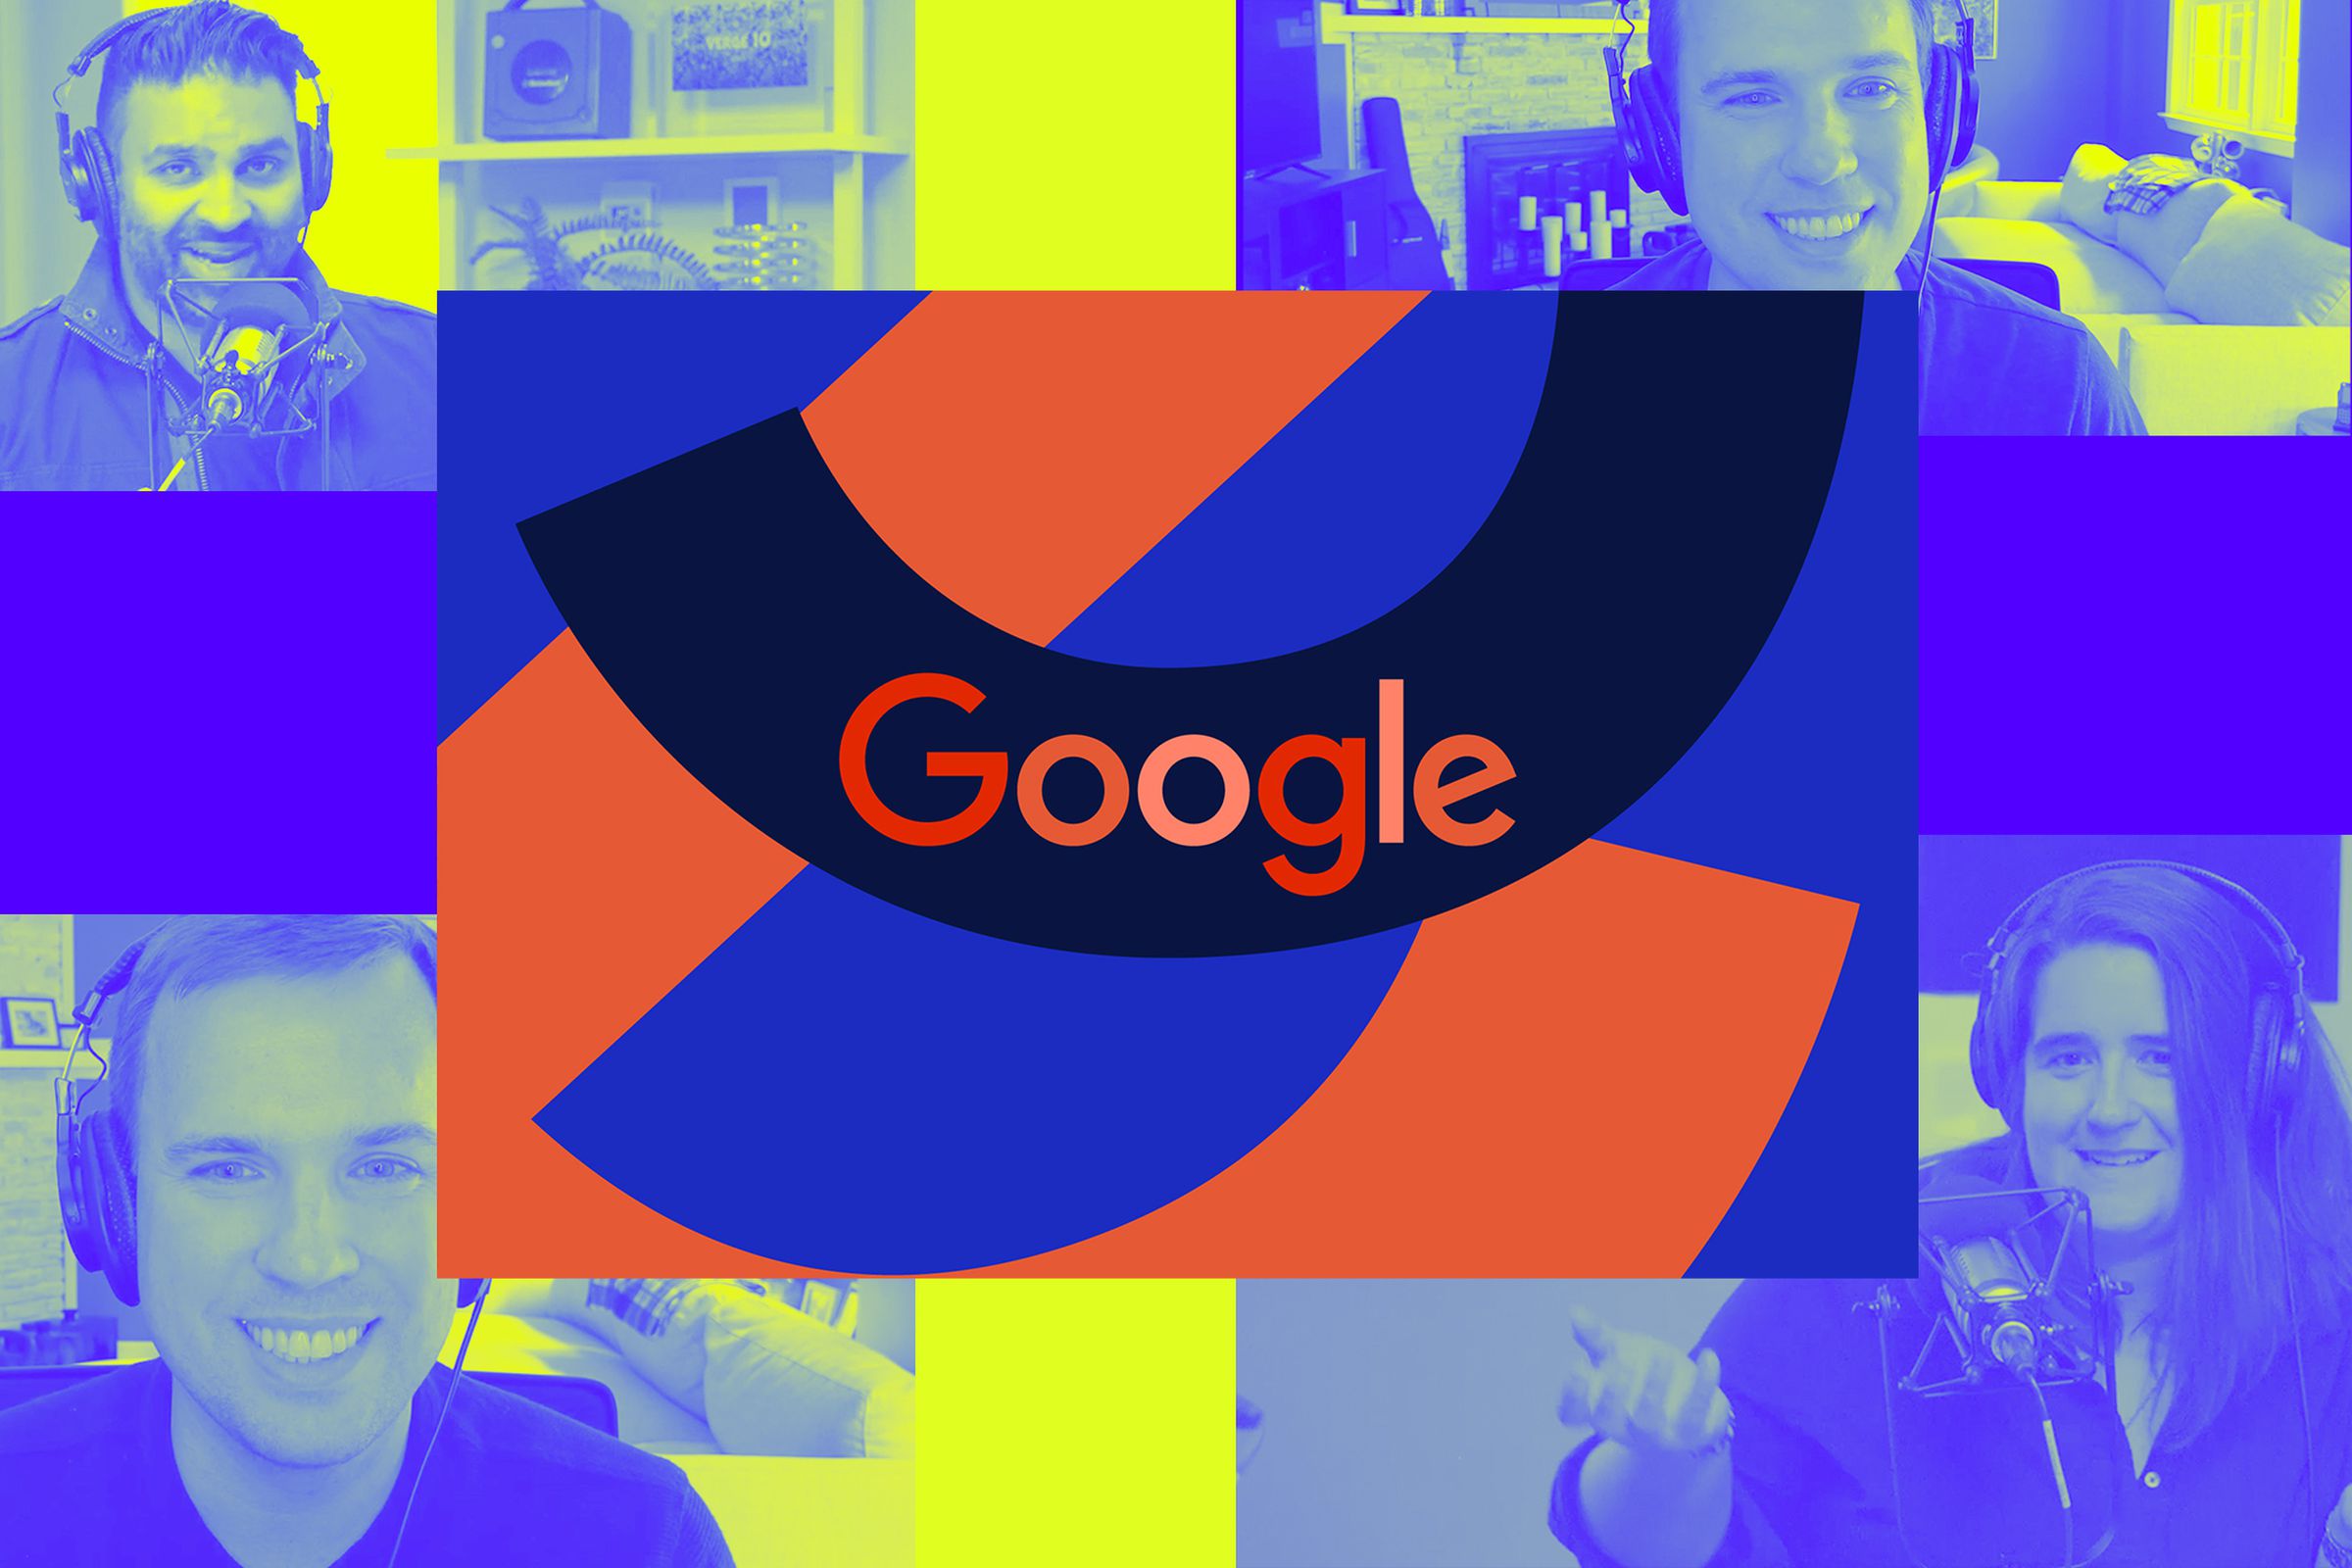 Logo Google di atas ilustrasi Vergecast